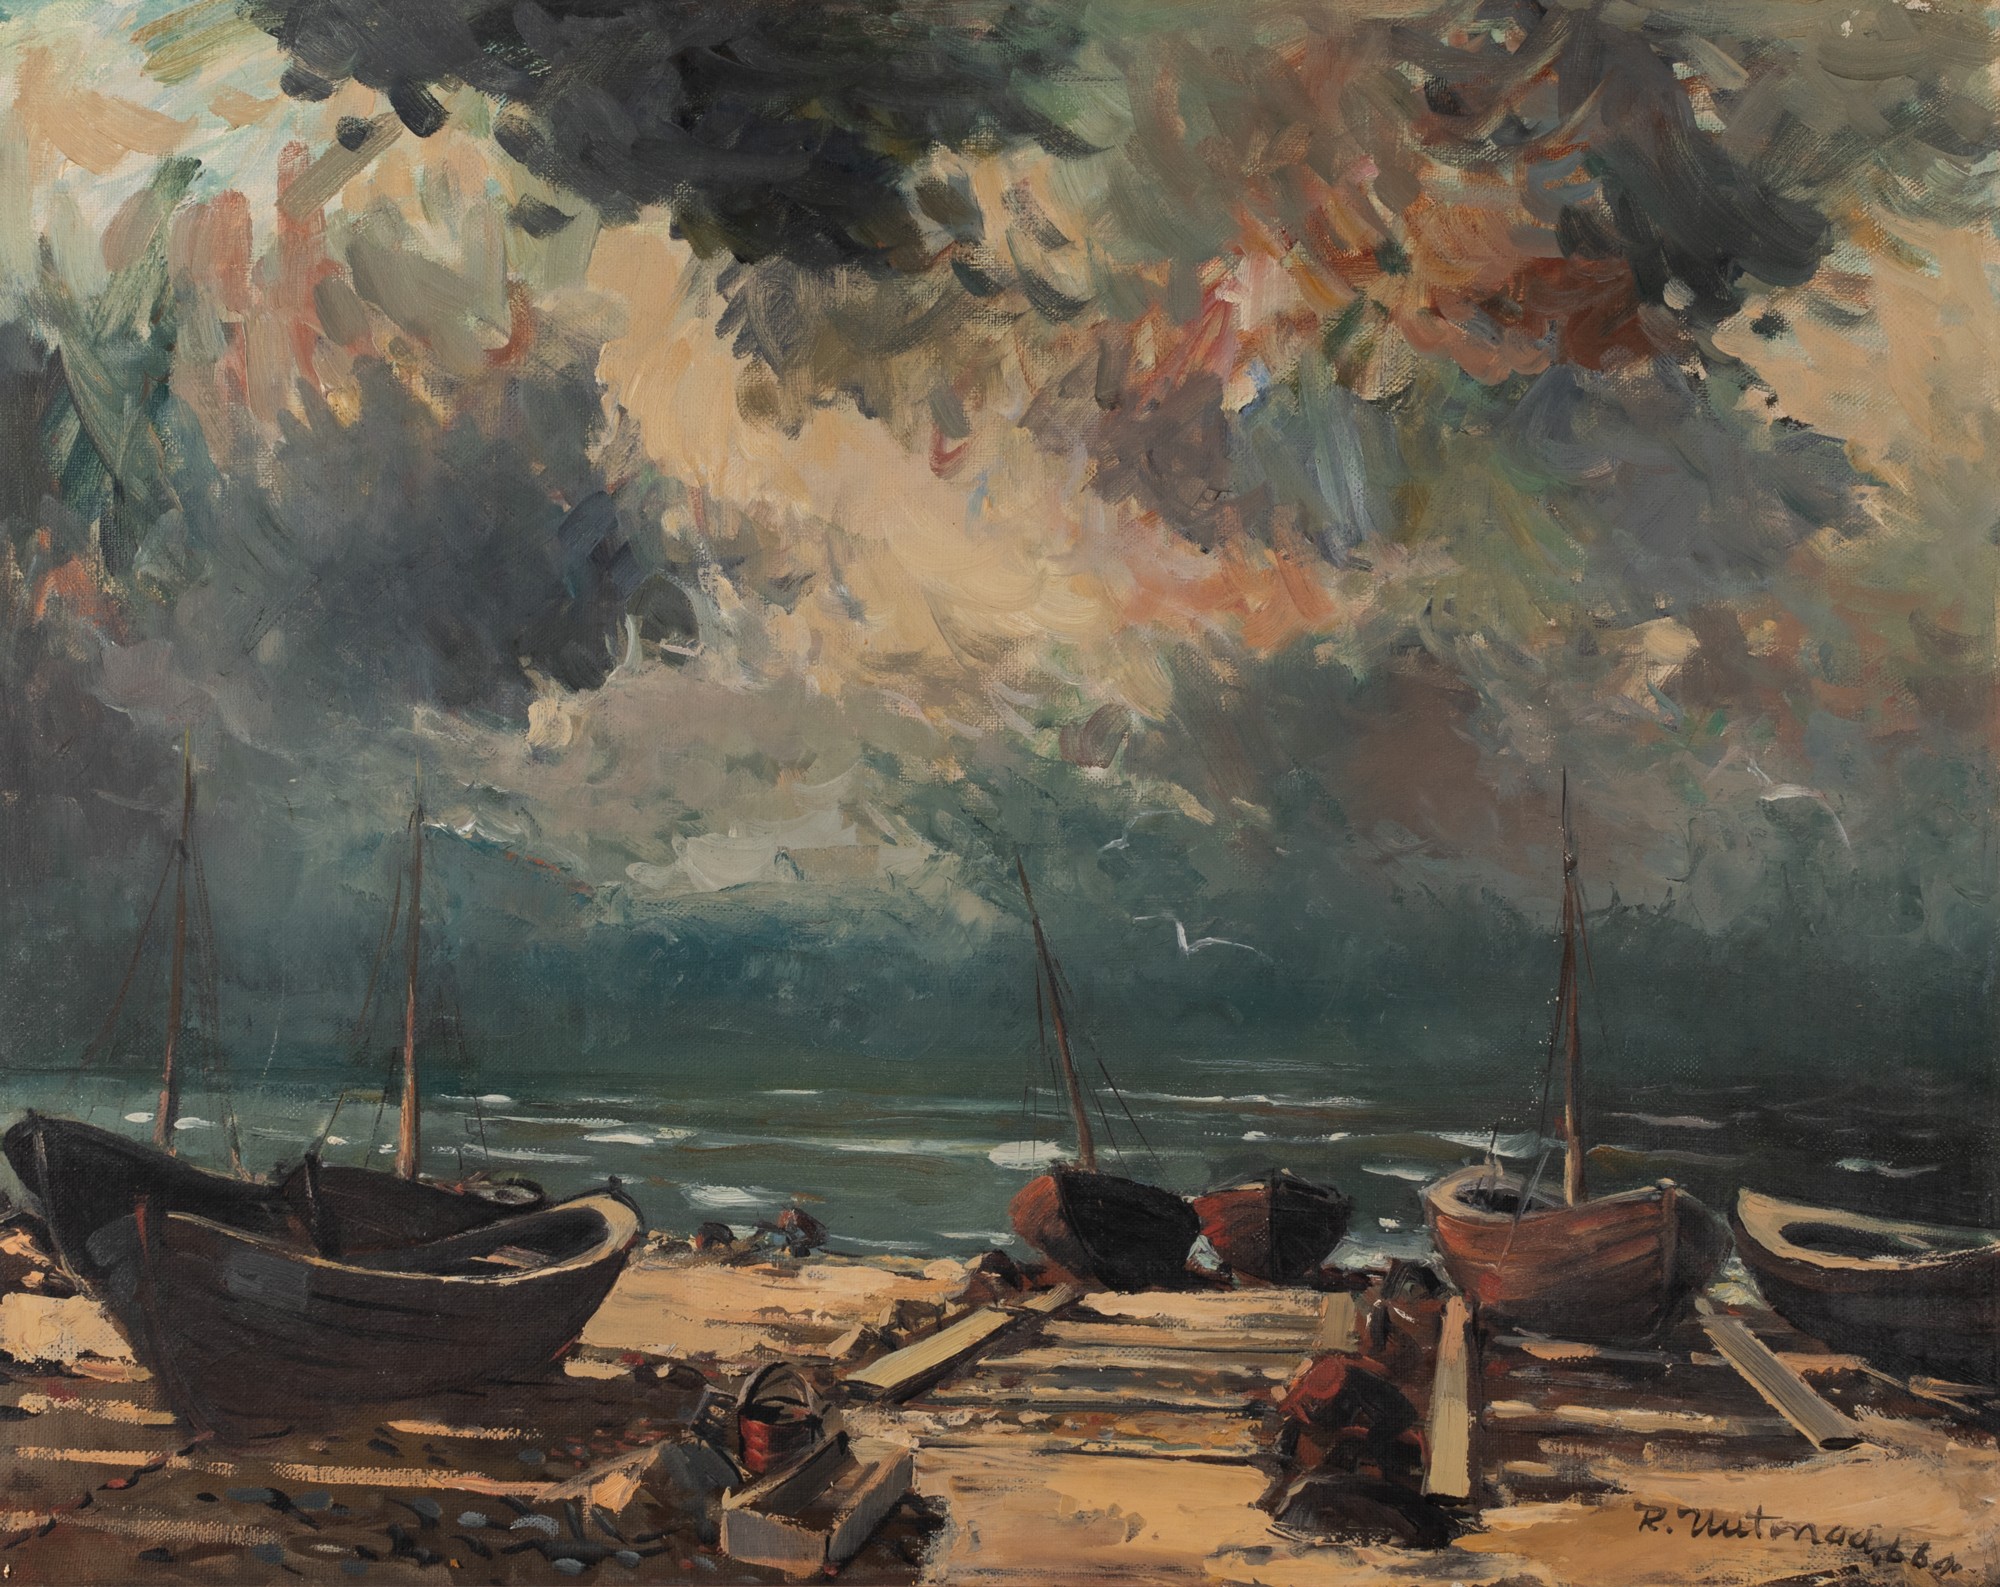 Richard Uutmaa "Fishing Boats on the Shore"